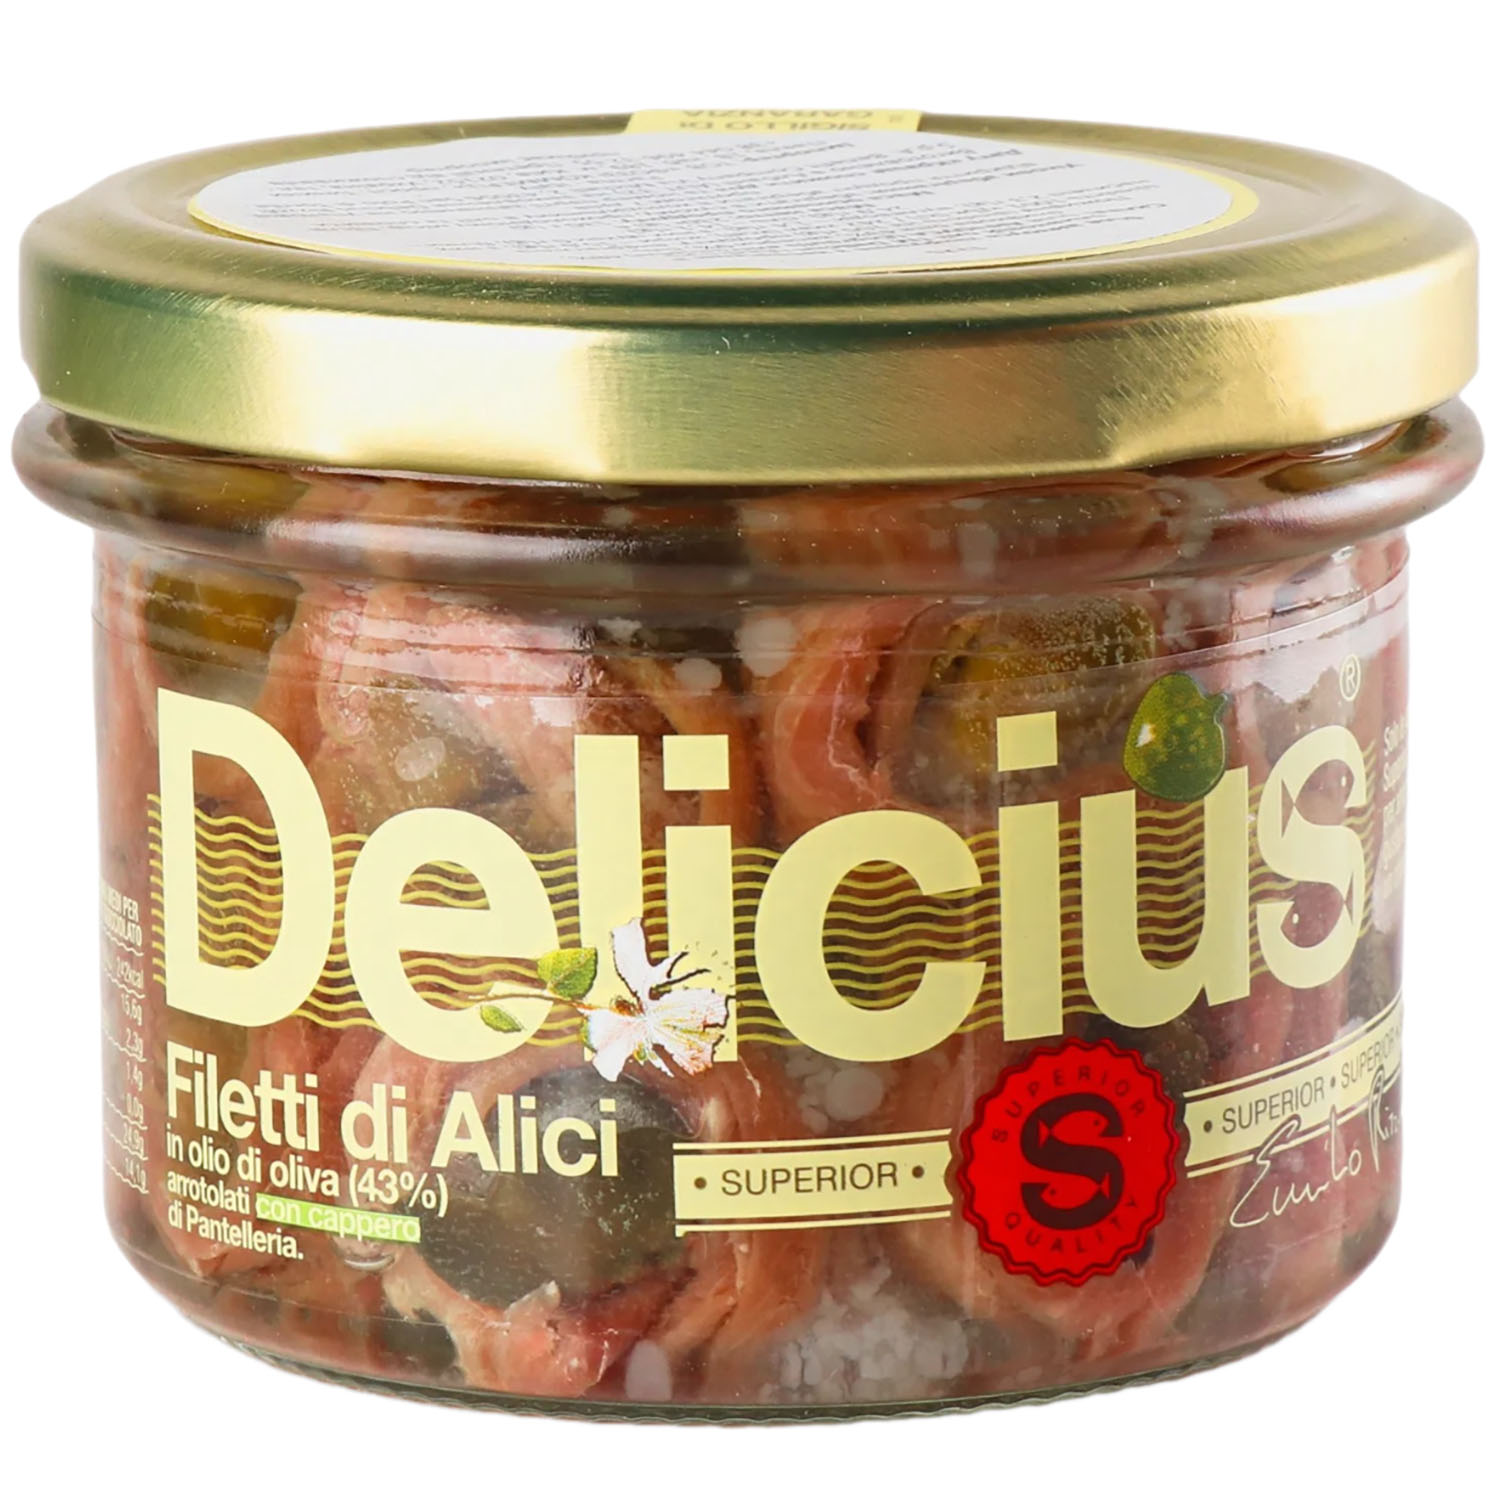 Филе анчоуса Delicius закрученное с каперсами в оливковом масле 130 г - фото 1